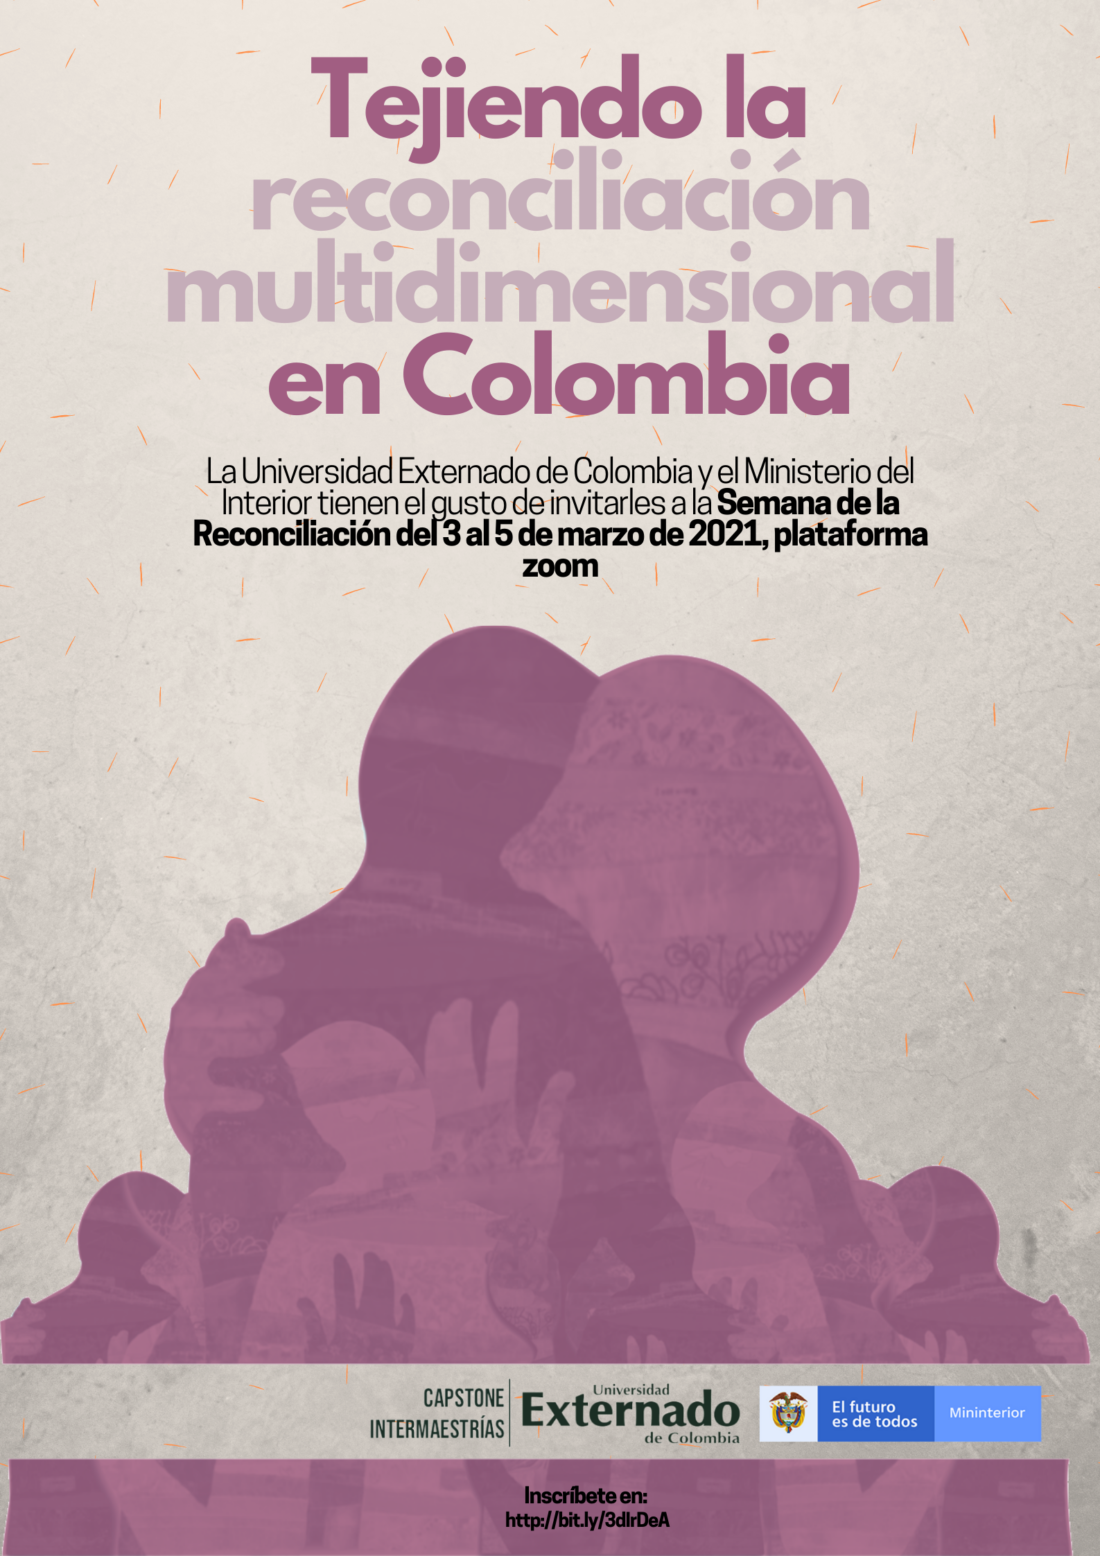 Flyer pieza promocional de la semana de la reconciliación en la universidad externado de Colombia organizada con el Ministerio del interior.